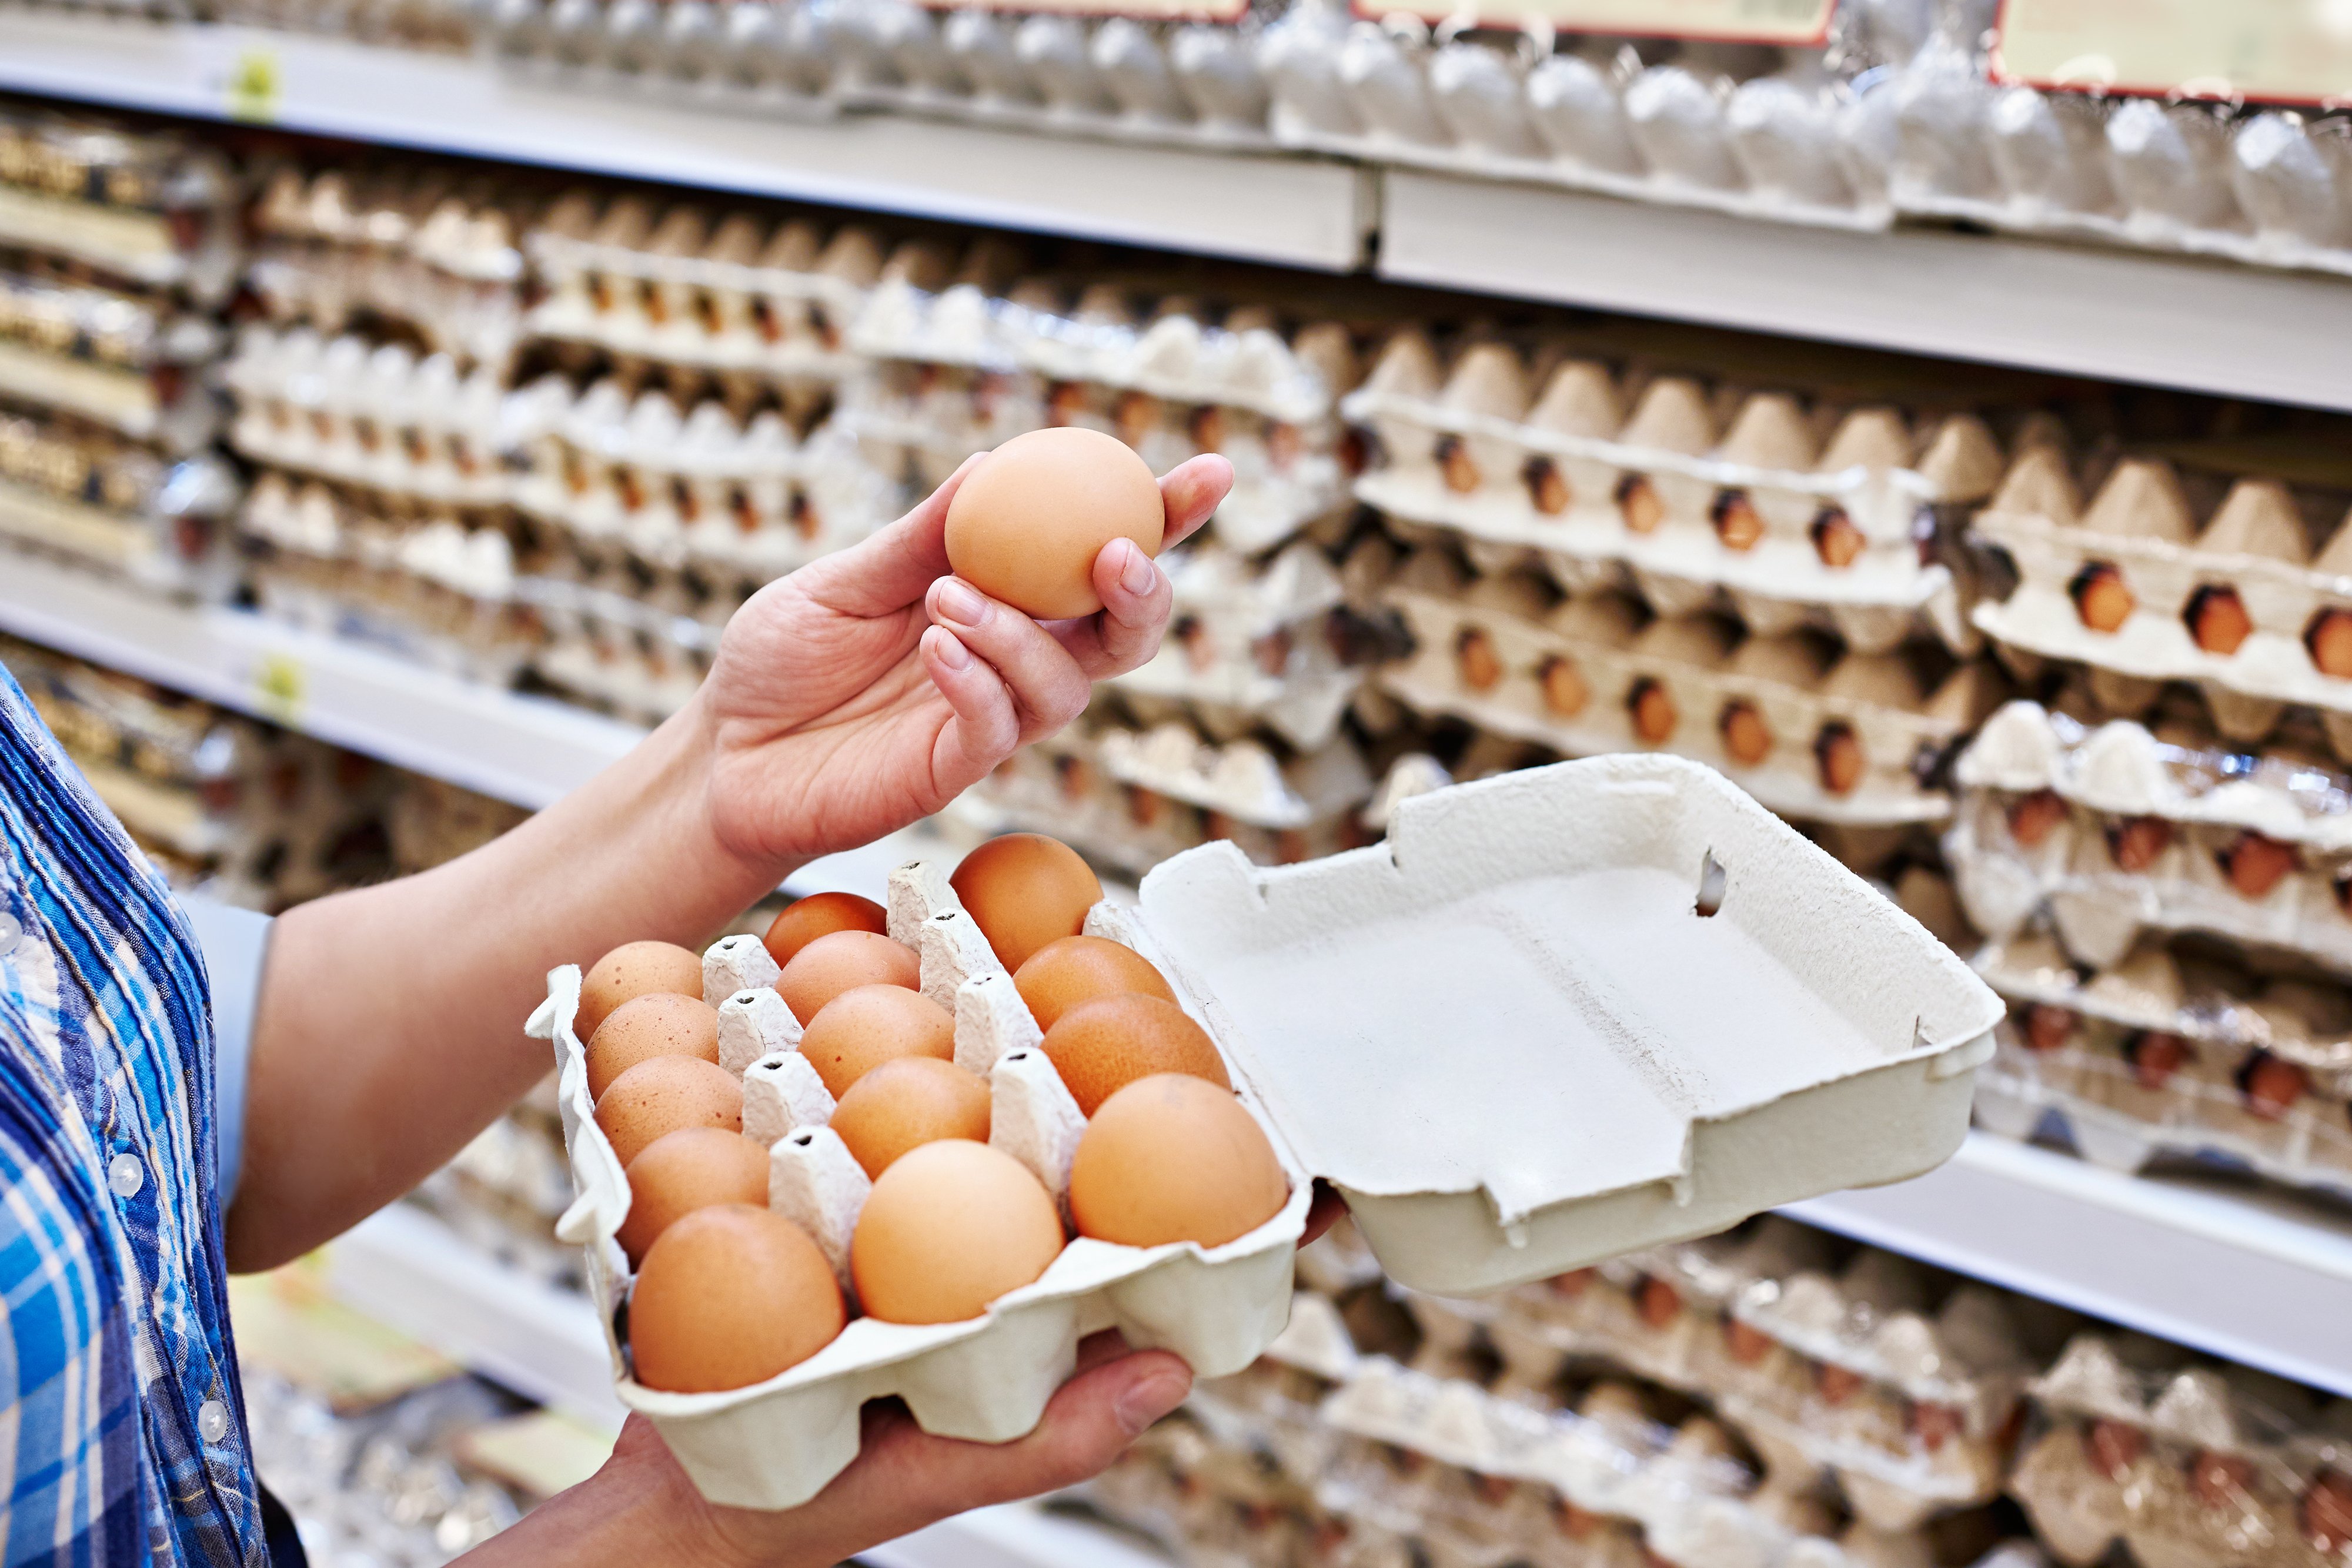 Hände einer Frau, die Eier im Supermarkt verpackt | Quelle: Shutterstock